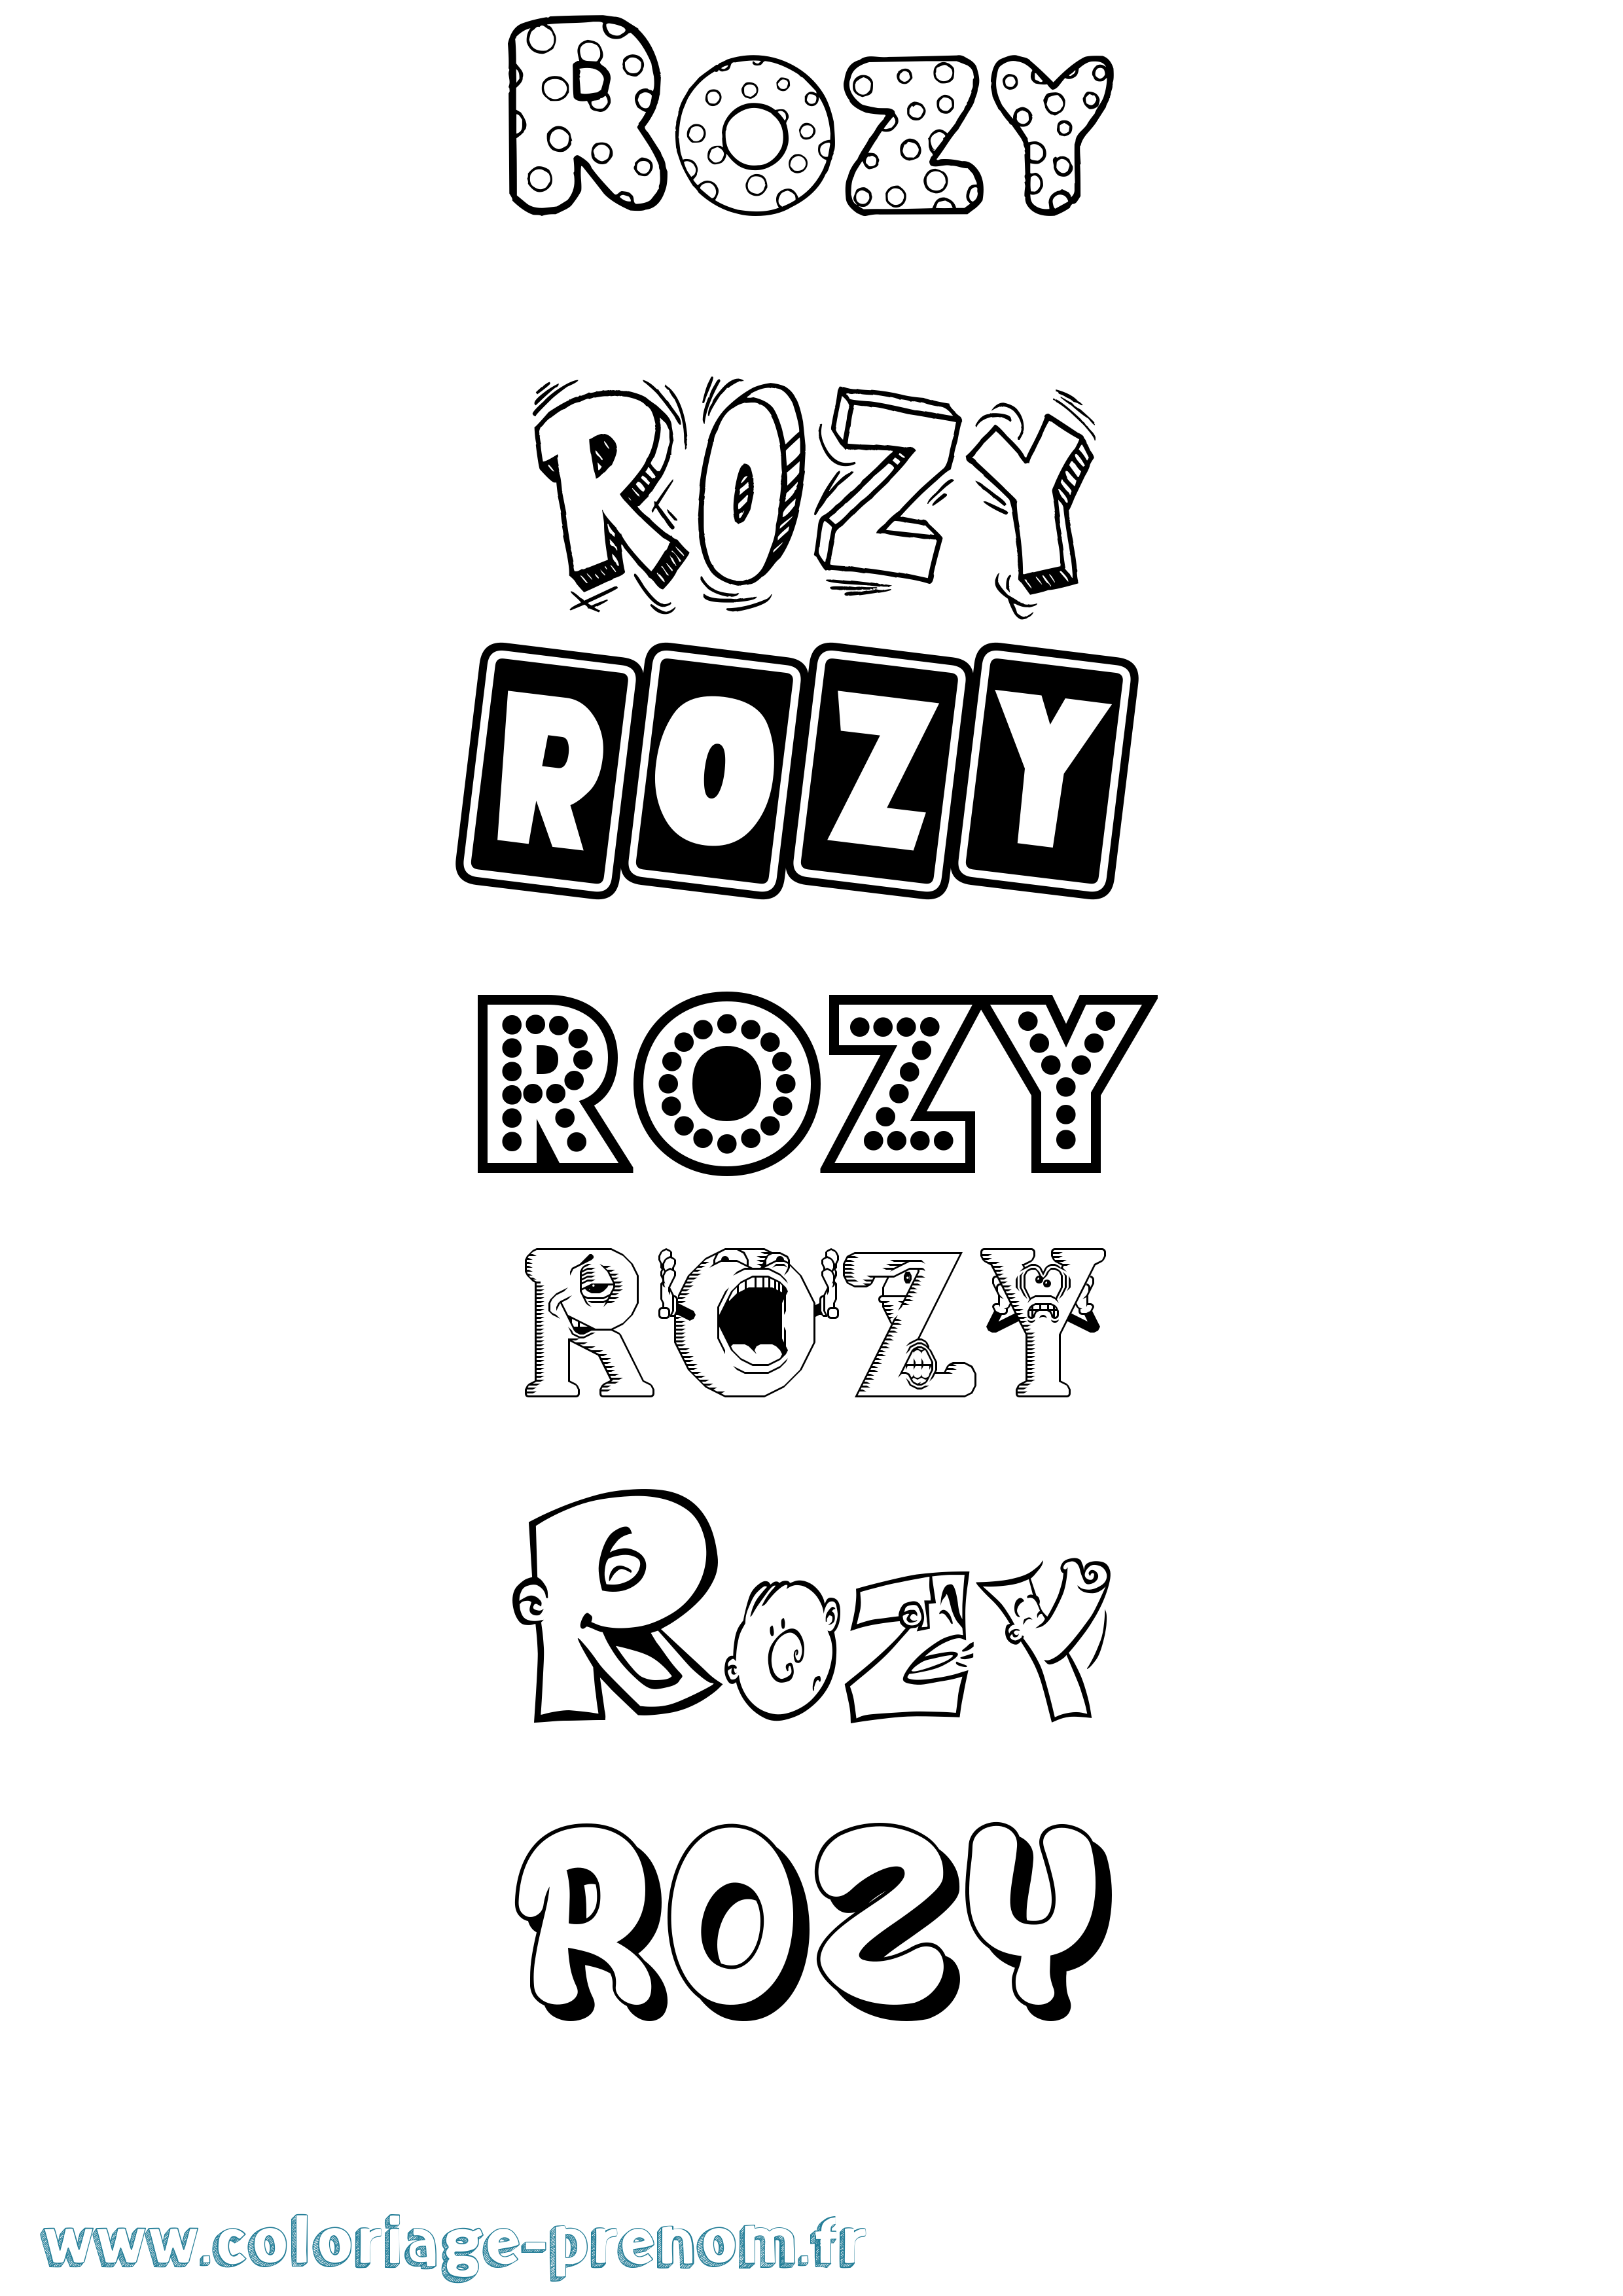 Coloriage prénom Rozy Fun